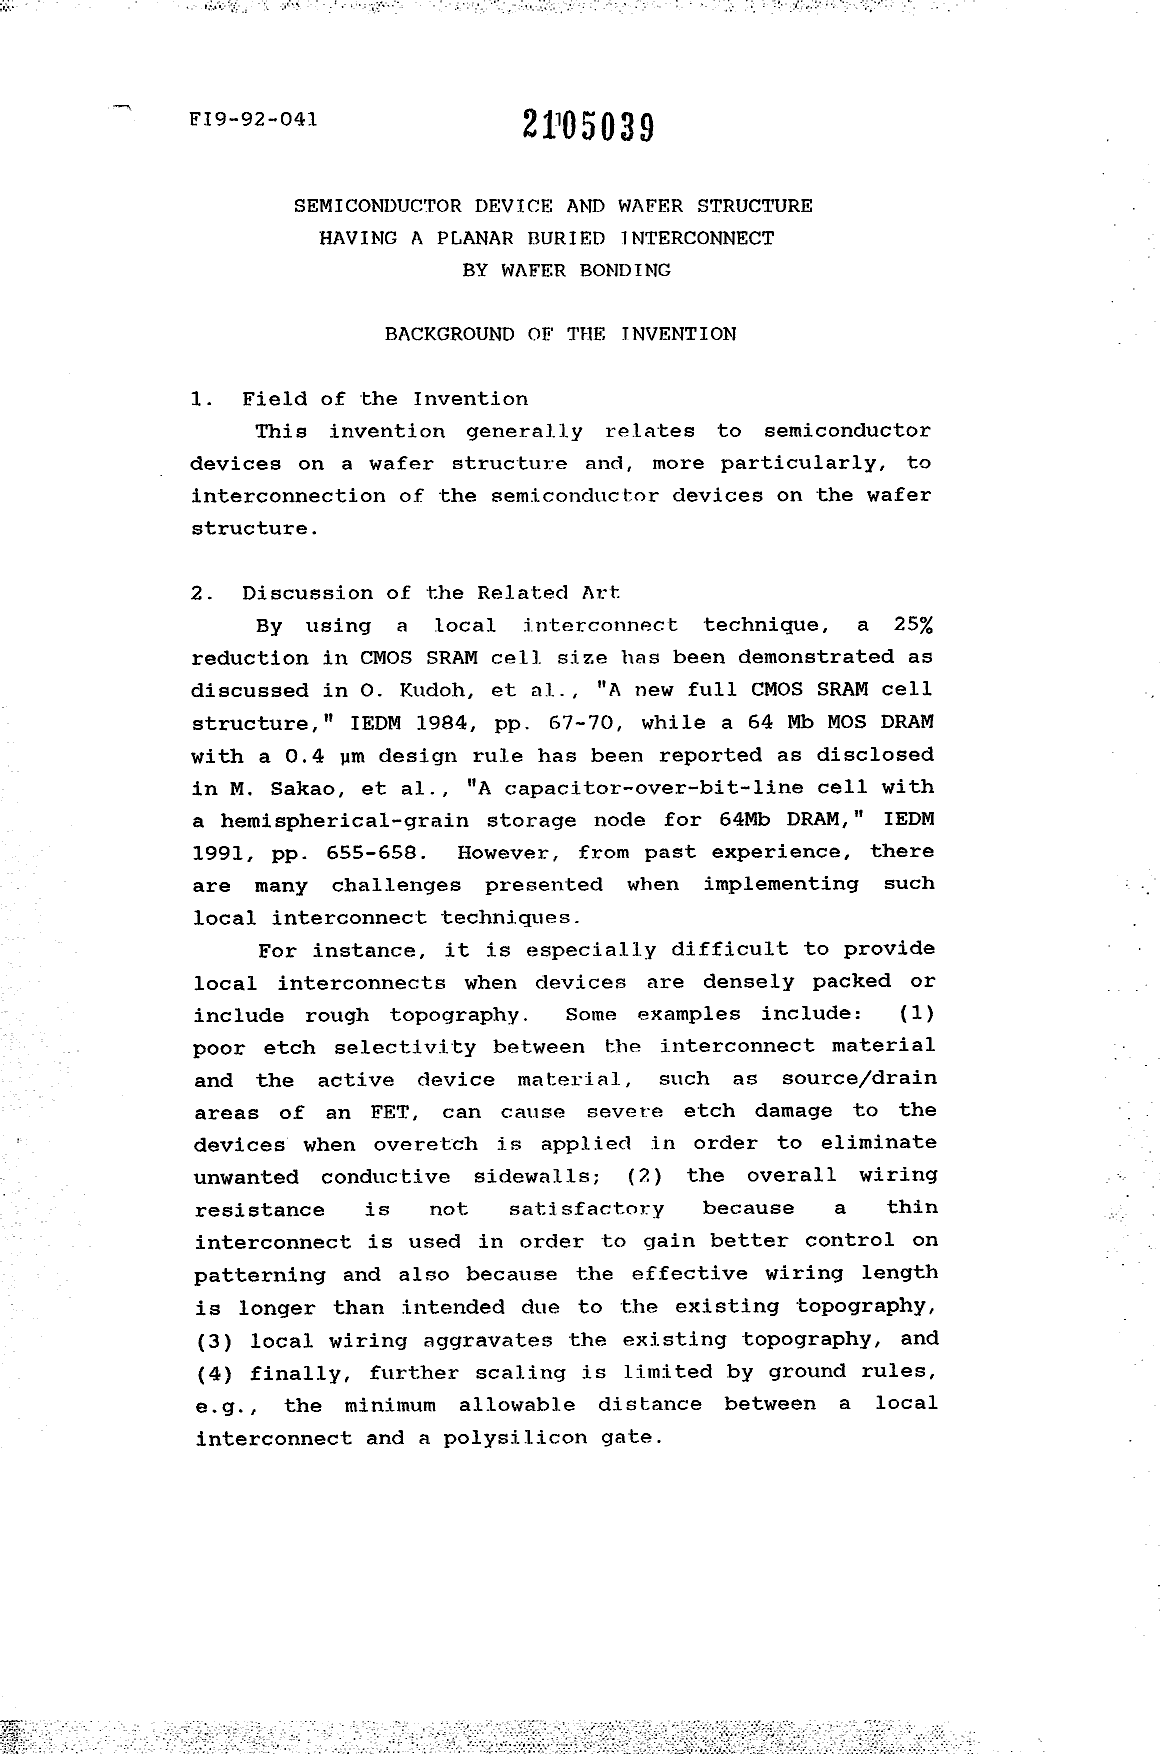 Canadian Patent Document 2105039. Description 19950610. Image 1 of 10